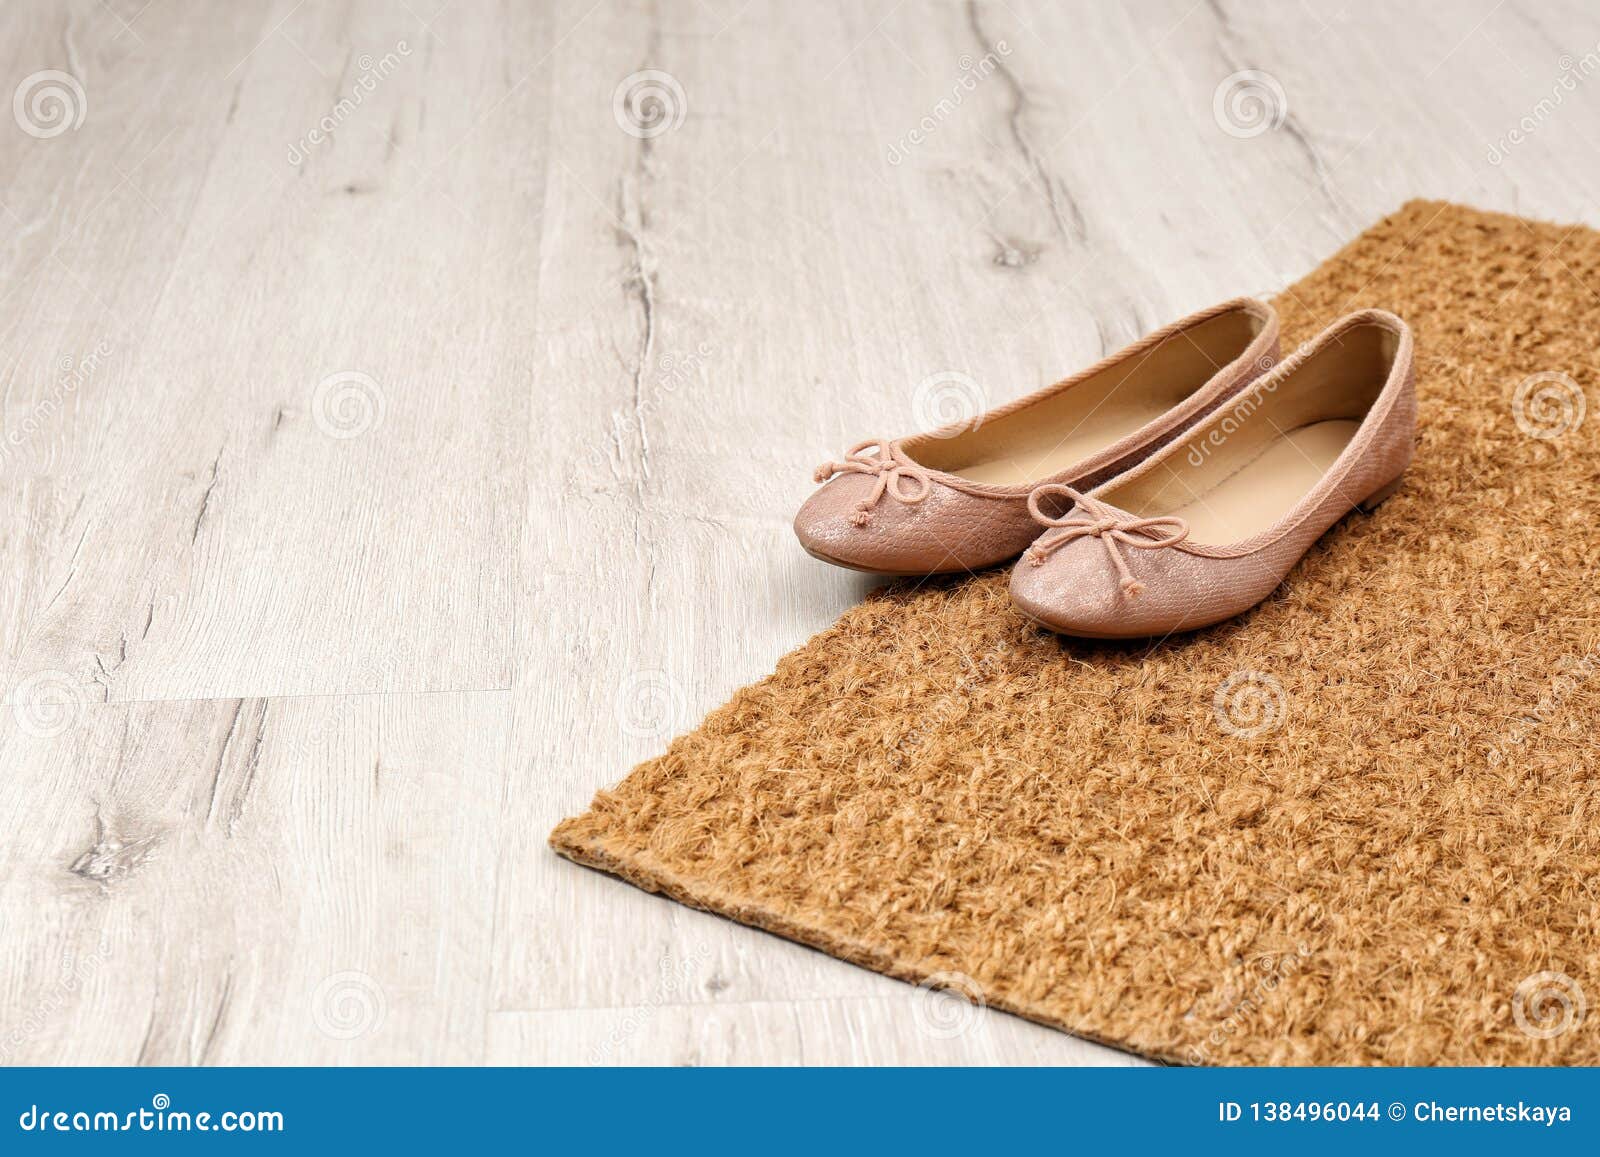 New Clean Doormat with Shoes on Floor Stock Photo - Image of doorstep ...